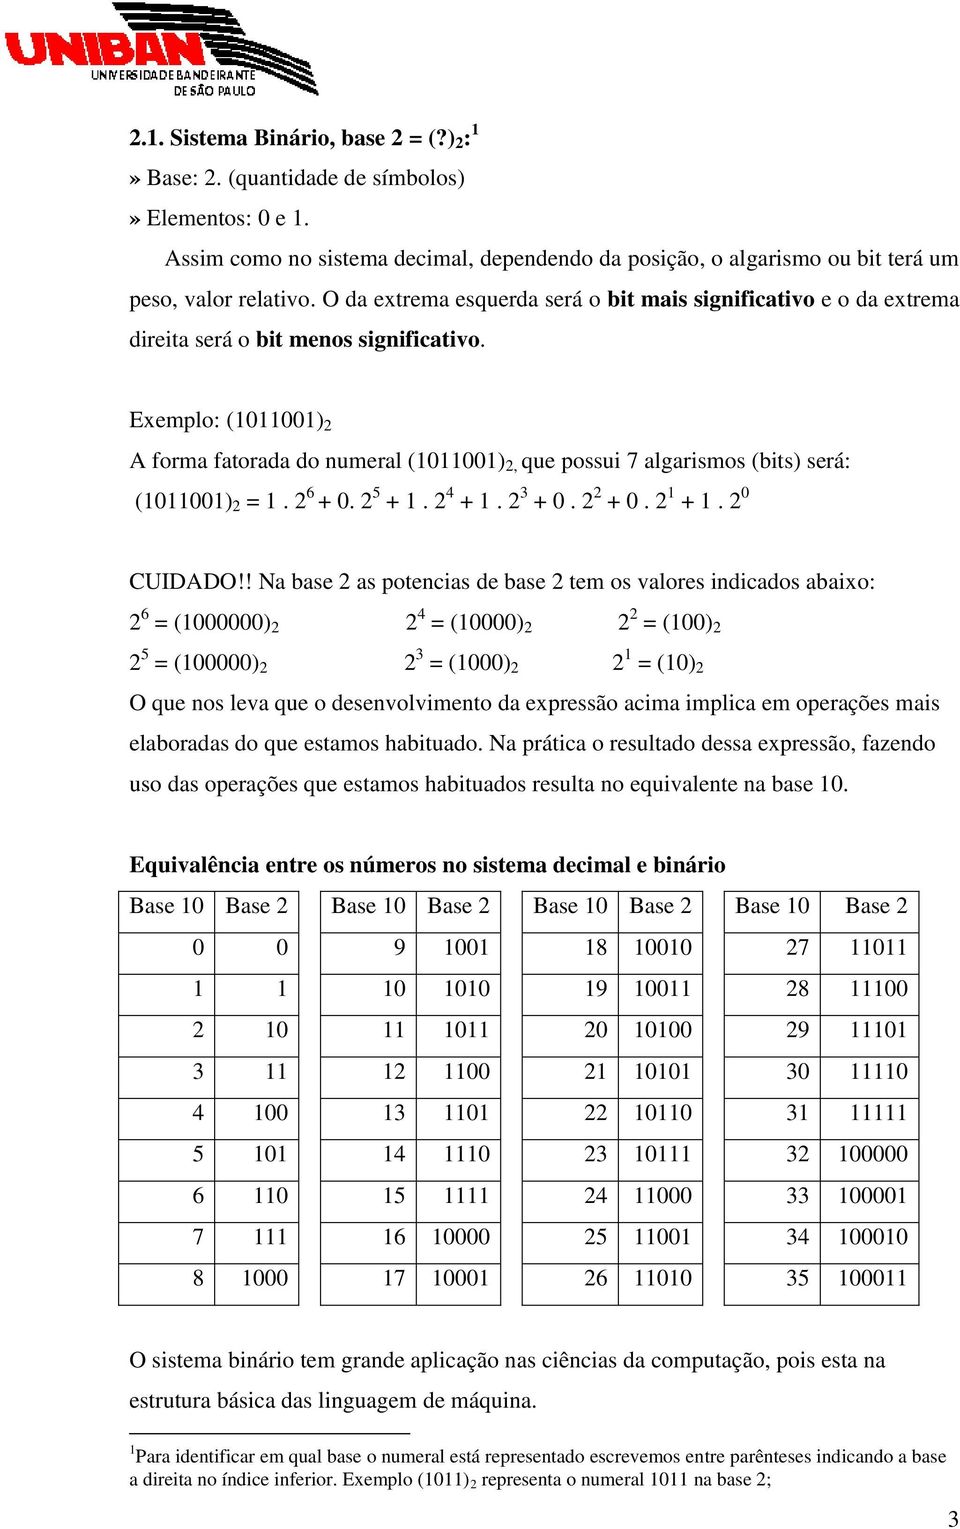 Exemplo: (101) A forma fatorada do numeral (101), que possui 7 algarismos (bits) será: (101) = 1. 6 + 0. 5 + 1. 4 + 1. 3 + 0. + 0. 1 + 1. 0 CUIDADO!